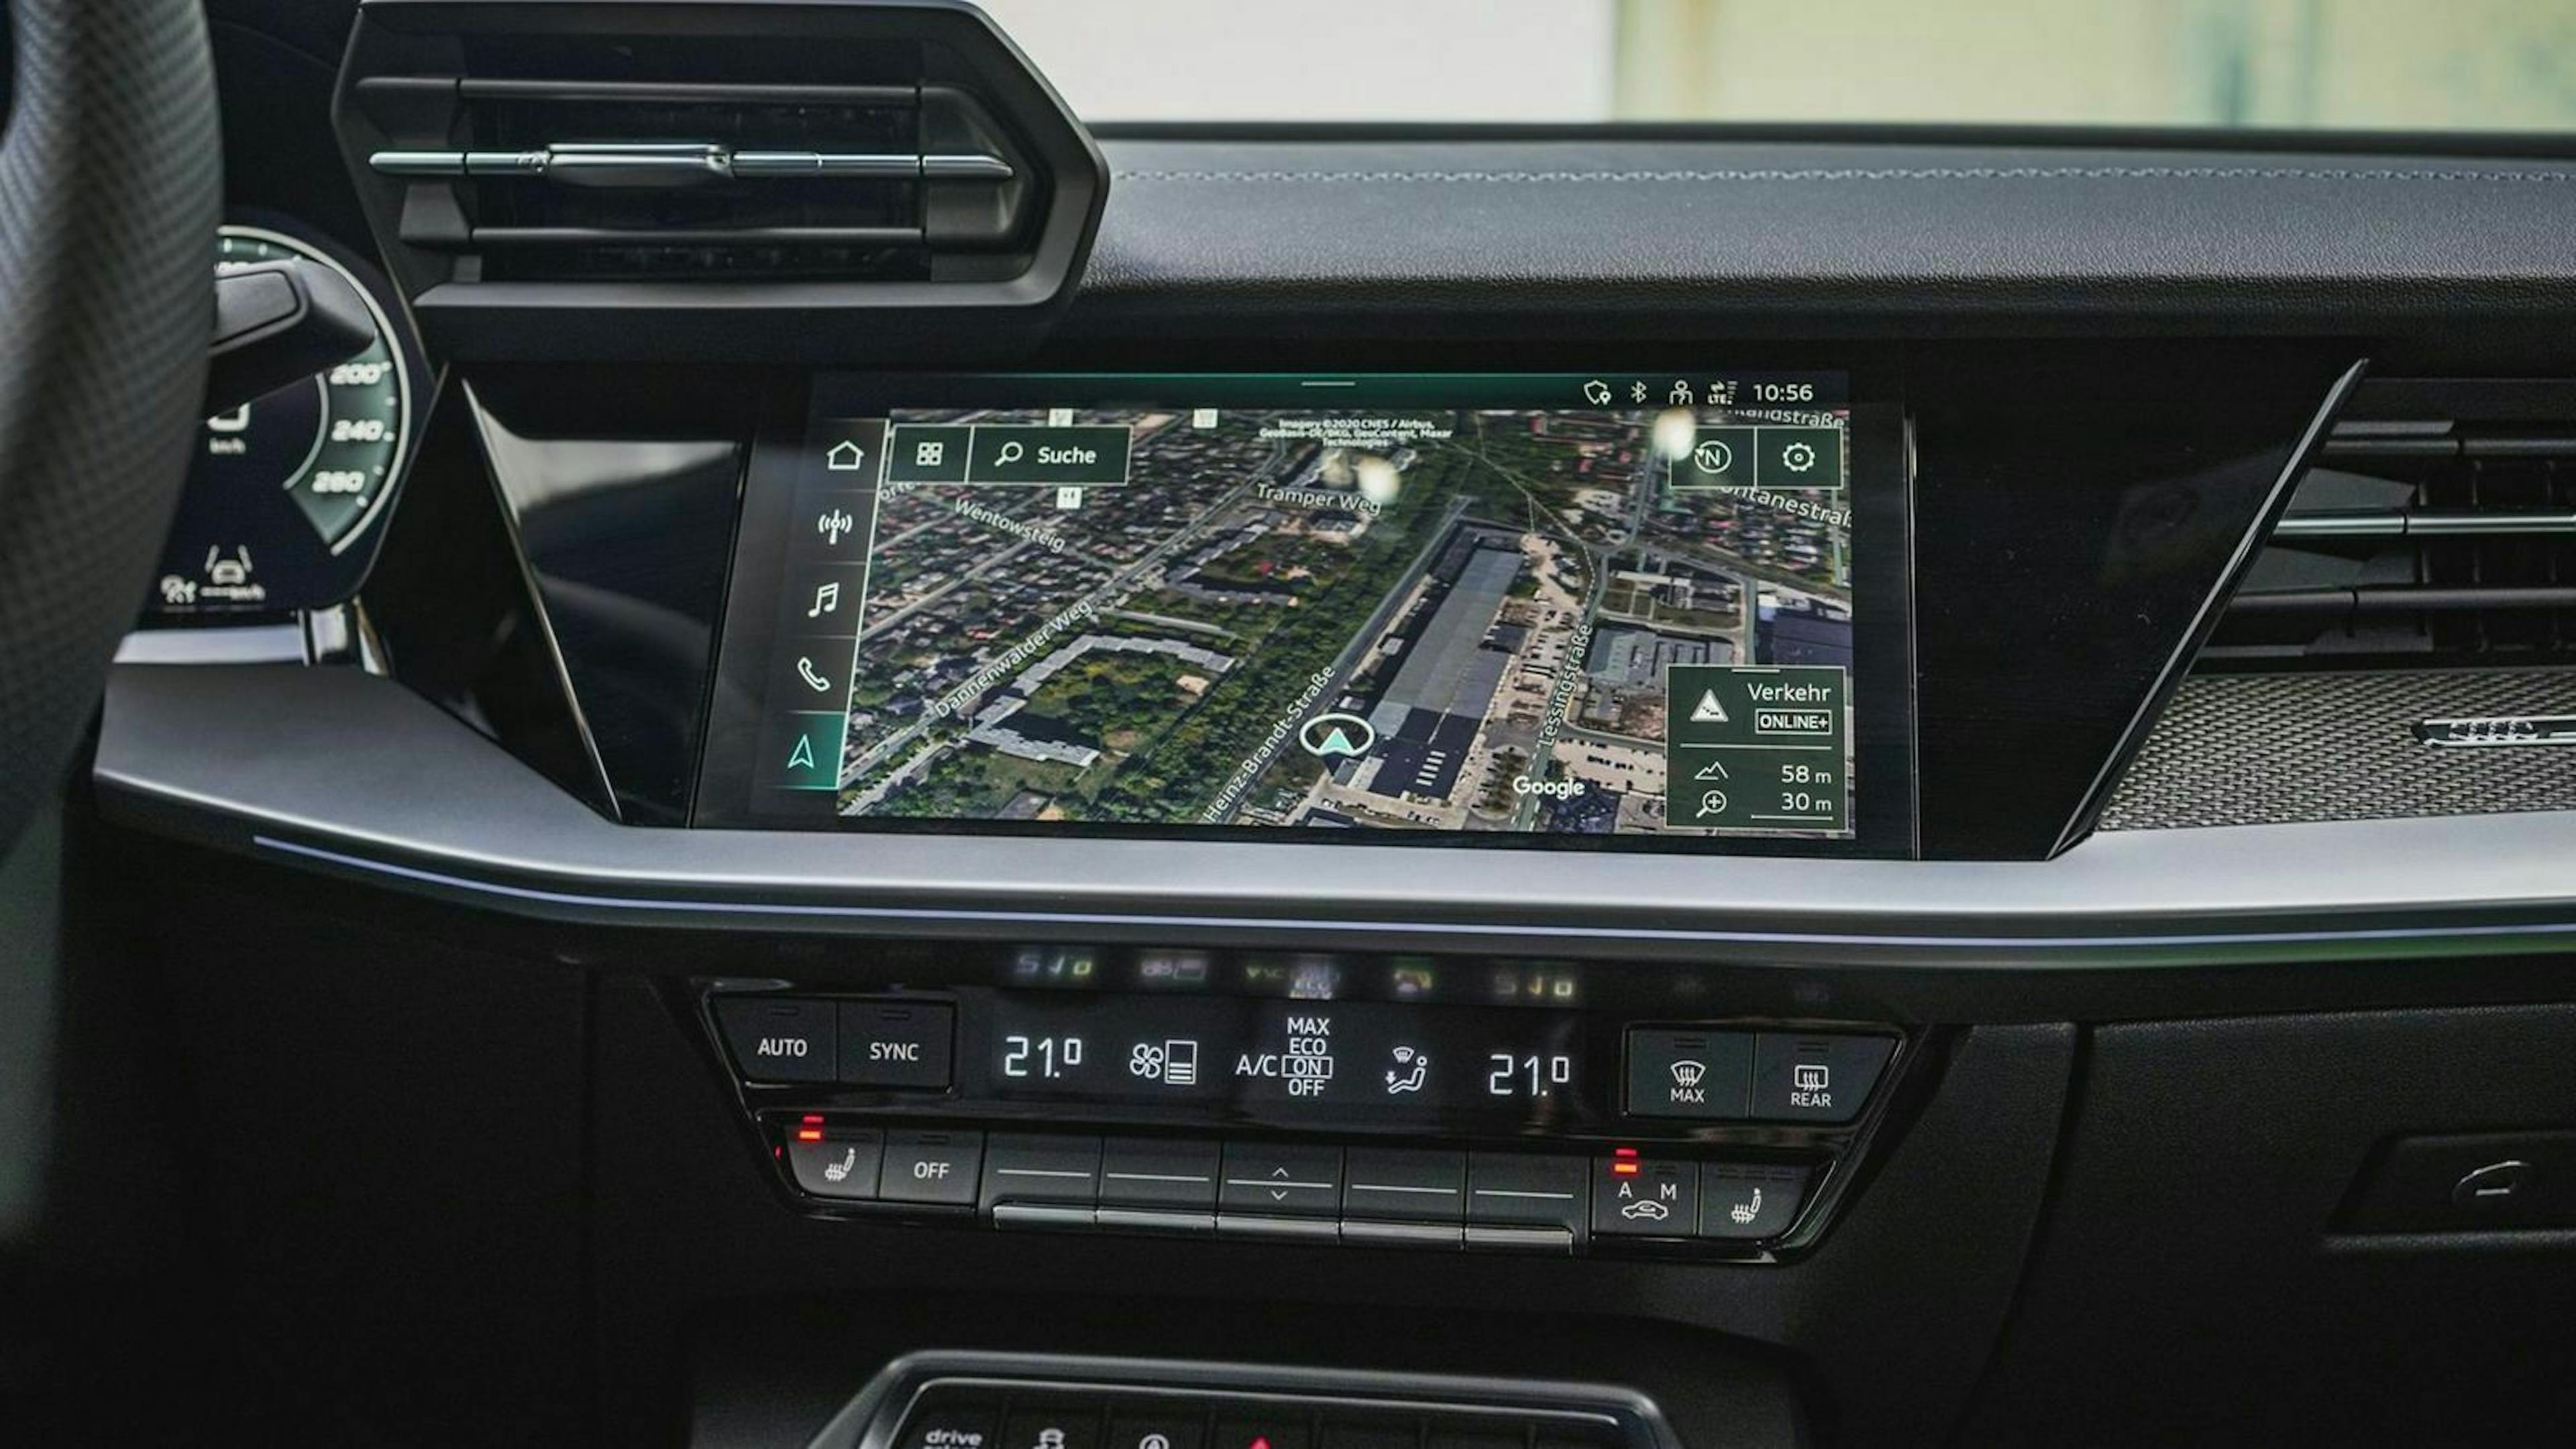 Zu sehen ist das Infotainmentsystem der Audi A3 Limousine